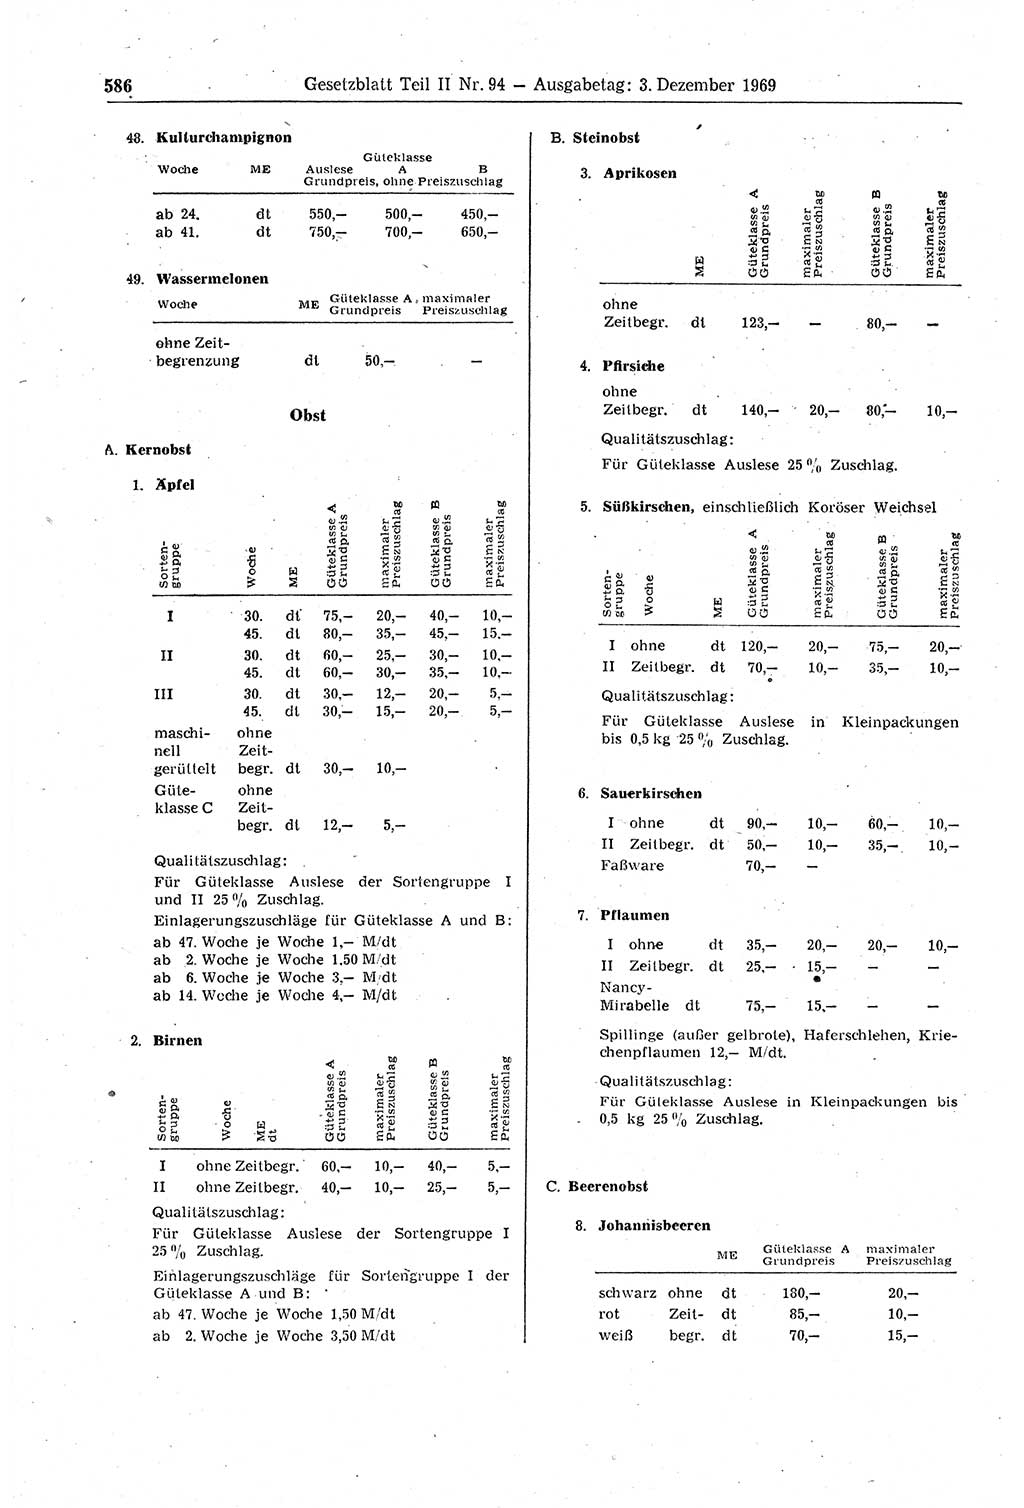 Gesetzblatt (GBl.) der Deutschen Demokratischen Republik (DDR) Teil ⅠⅠ 1969, Seite 586 (GBl. DDR ⅠⅠ 1969, S. 586)